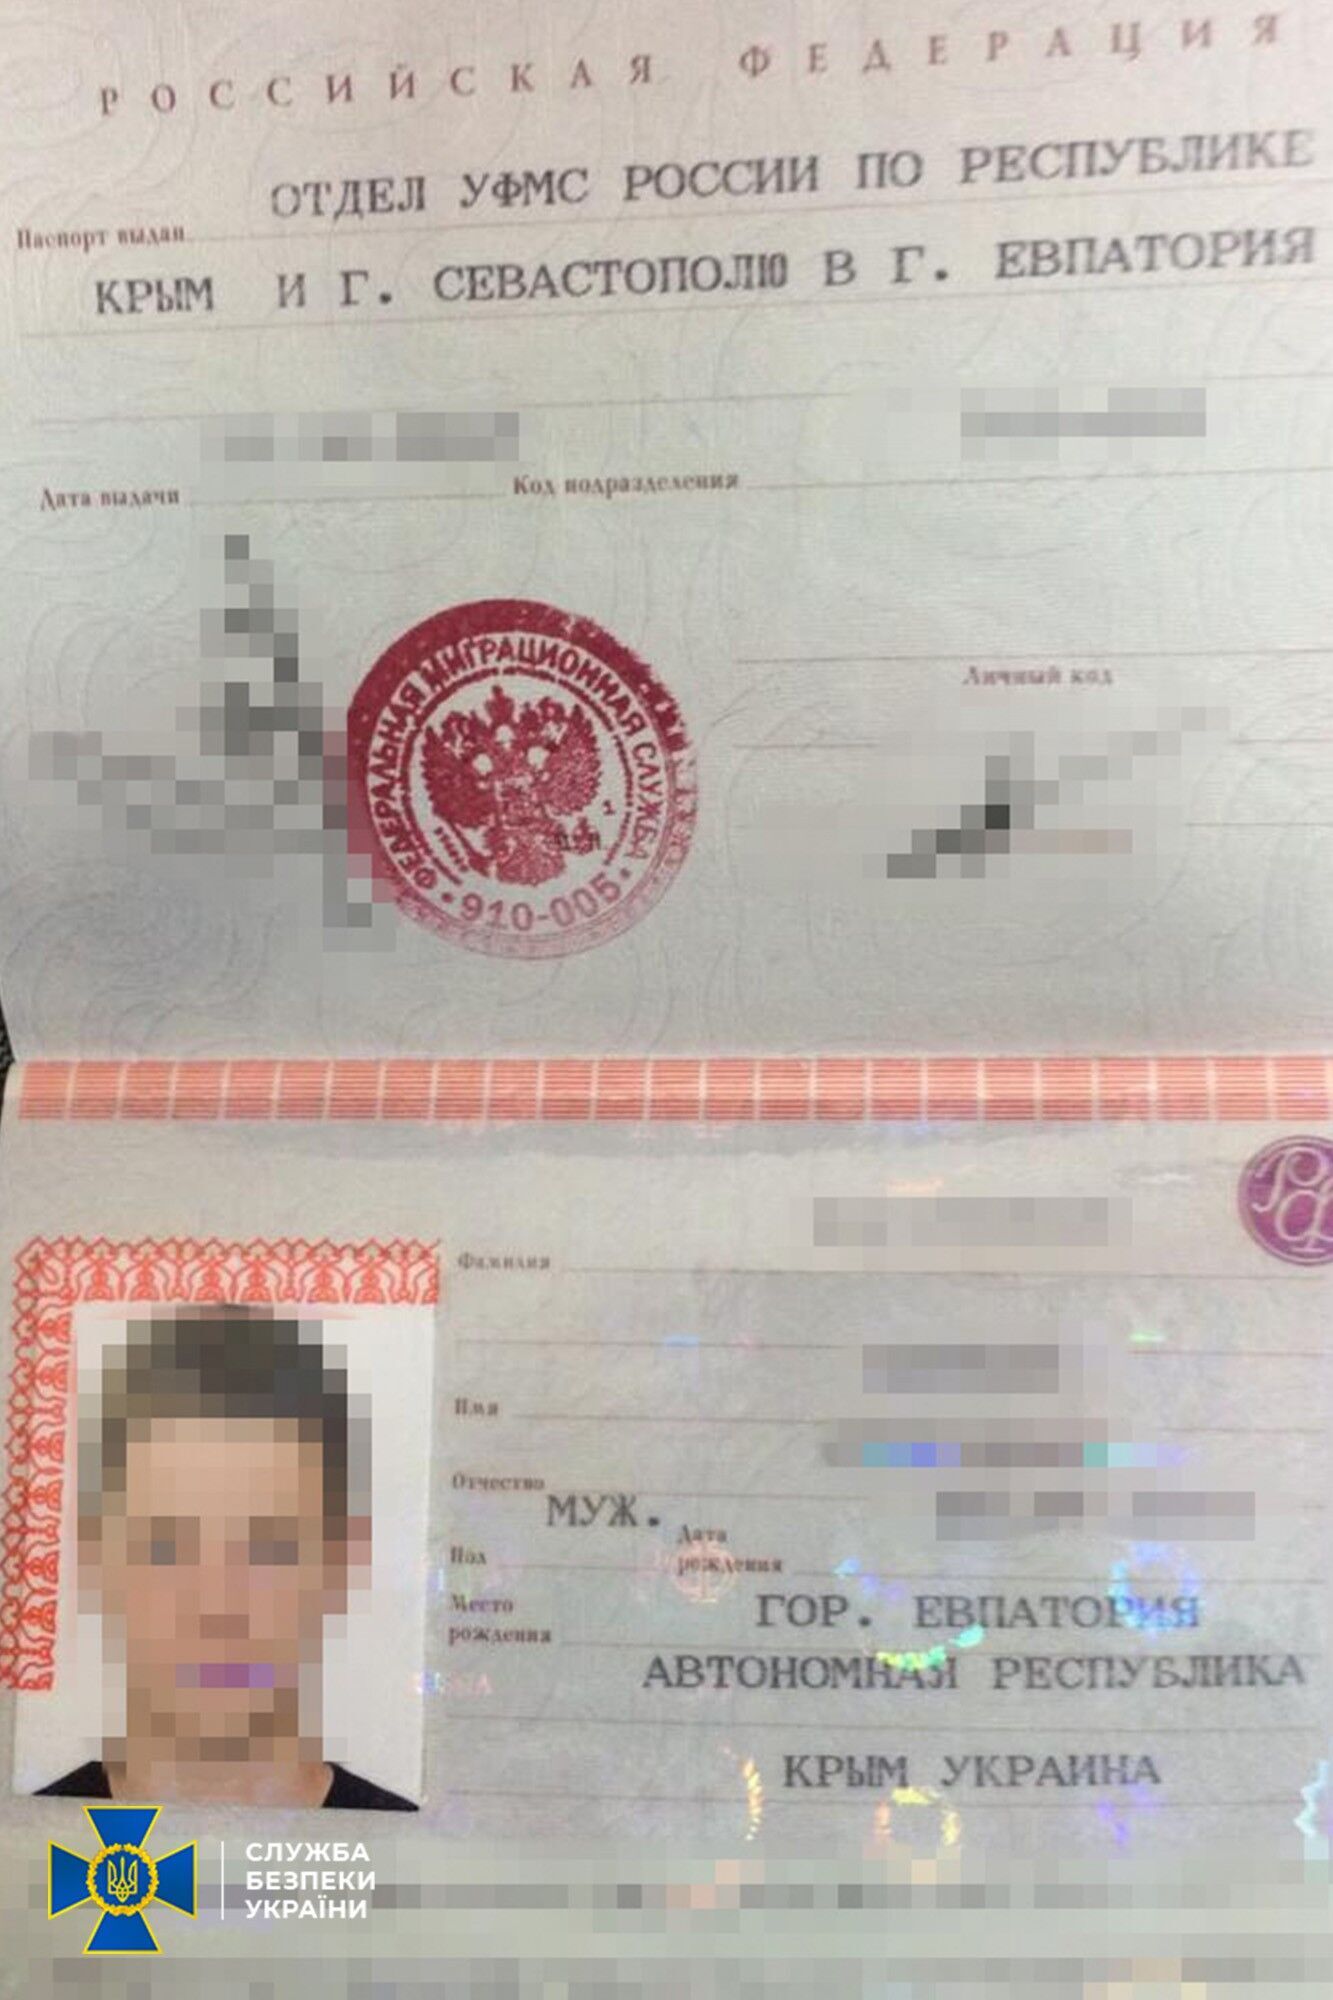 Его родственники получили гражданство РФ